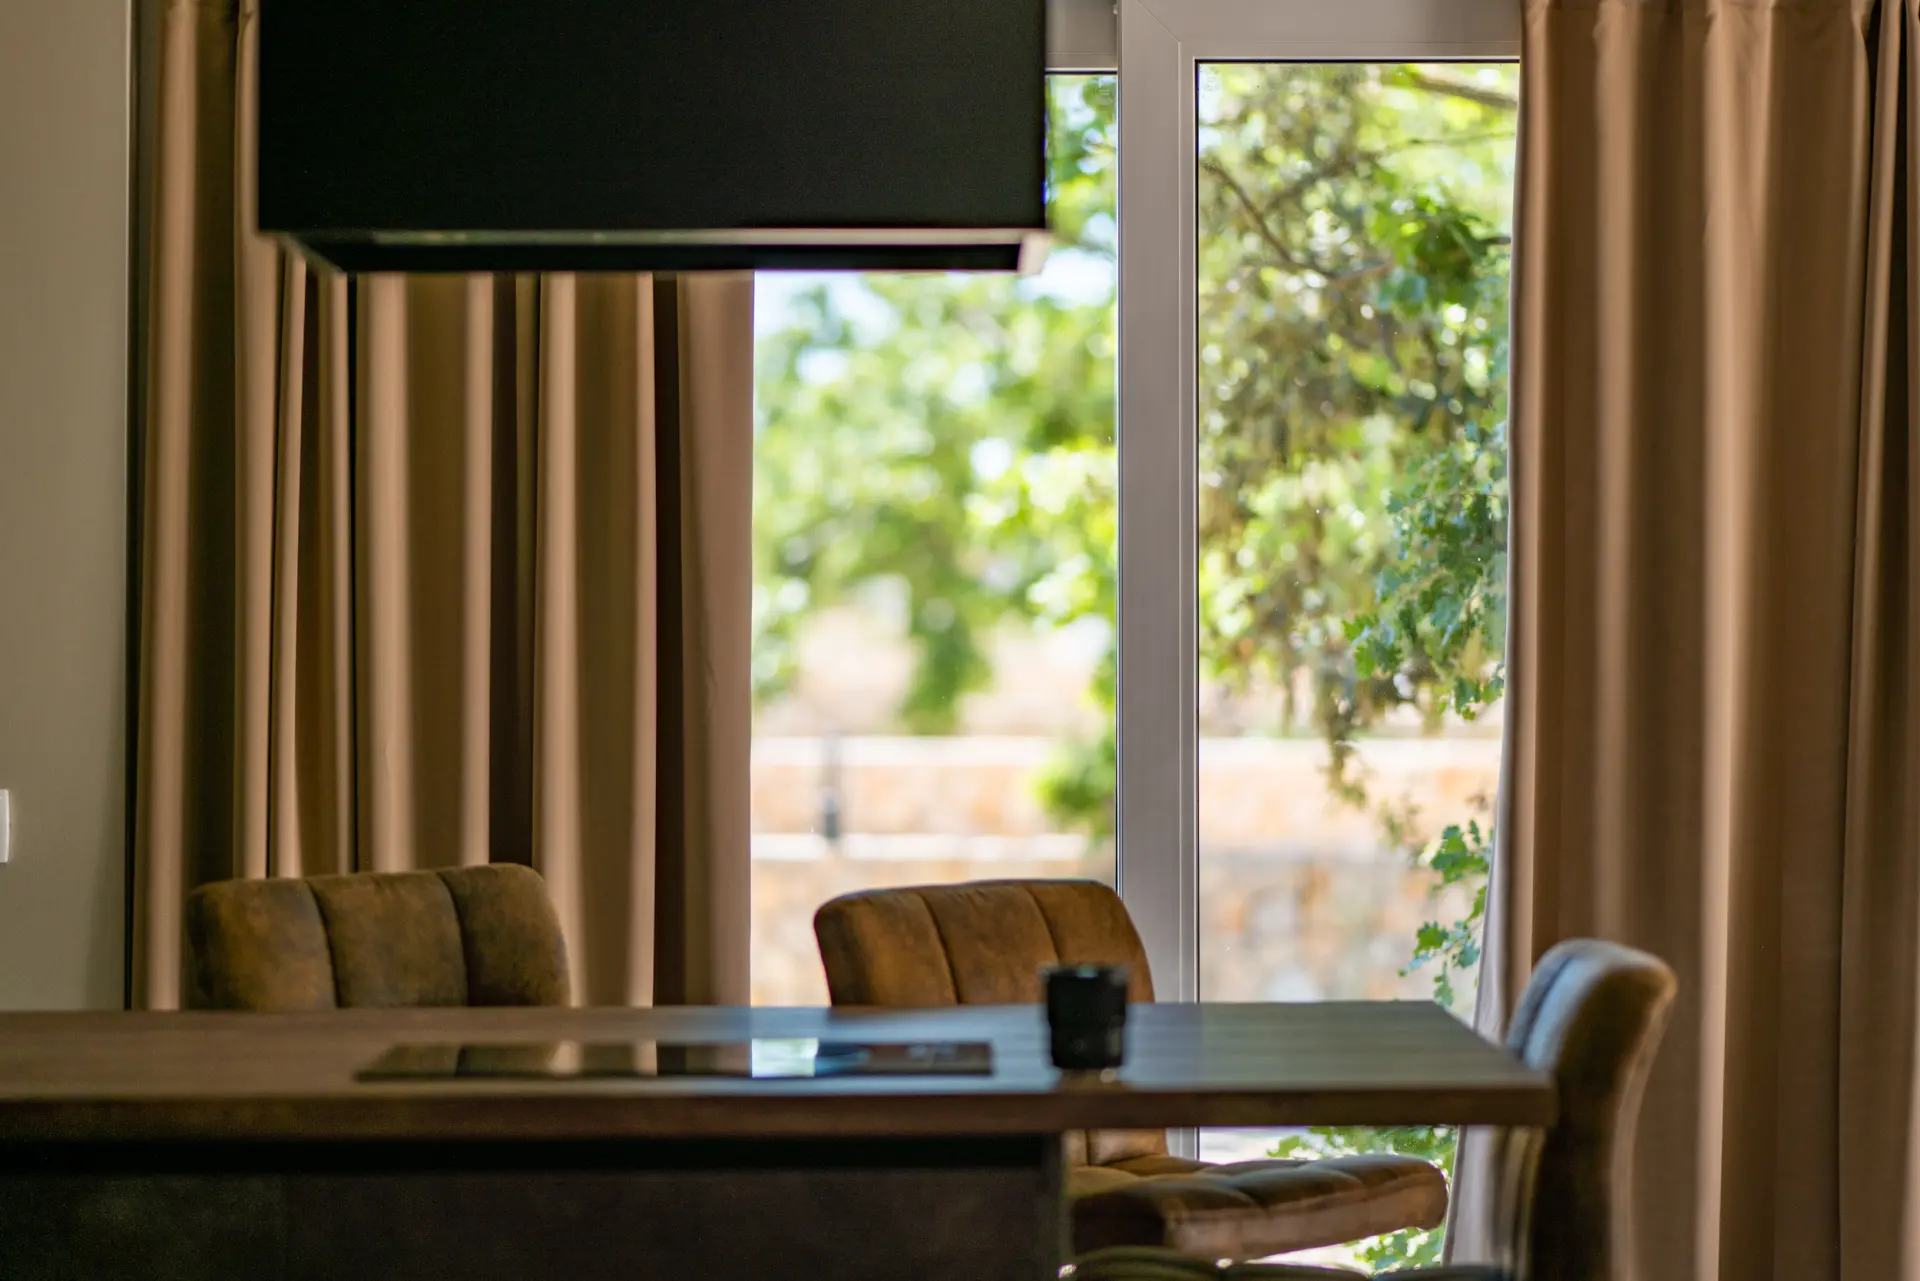 Kamp Dionis Zaton Mobile Home Premium. Udoban prostor za blagovanje s stolom, stolicama i pogledom prema van. Stol je od drveta, a stolice od pruća. Na stolu se nalazi vaza s cvijećem, a pogled kroz prozor pruža se na bujni zeleni vrt.